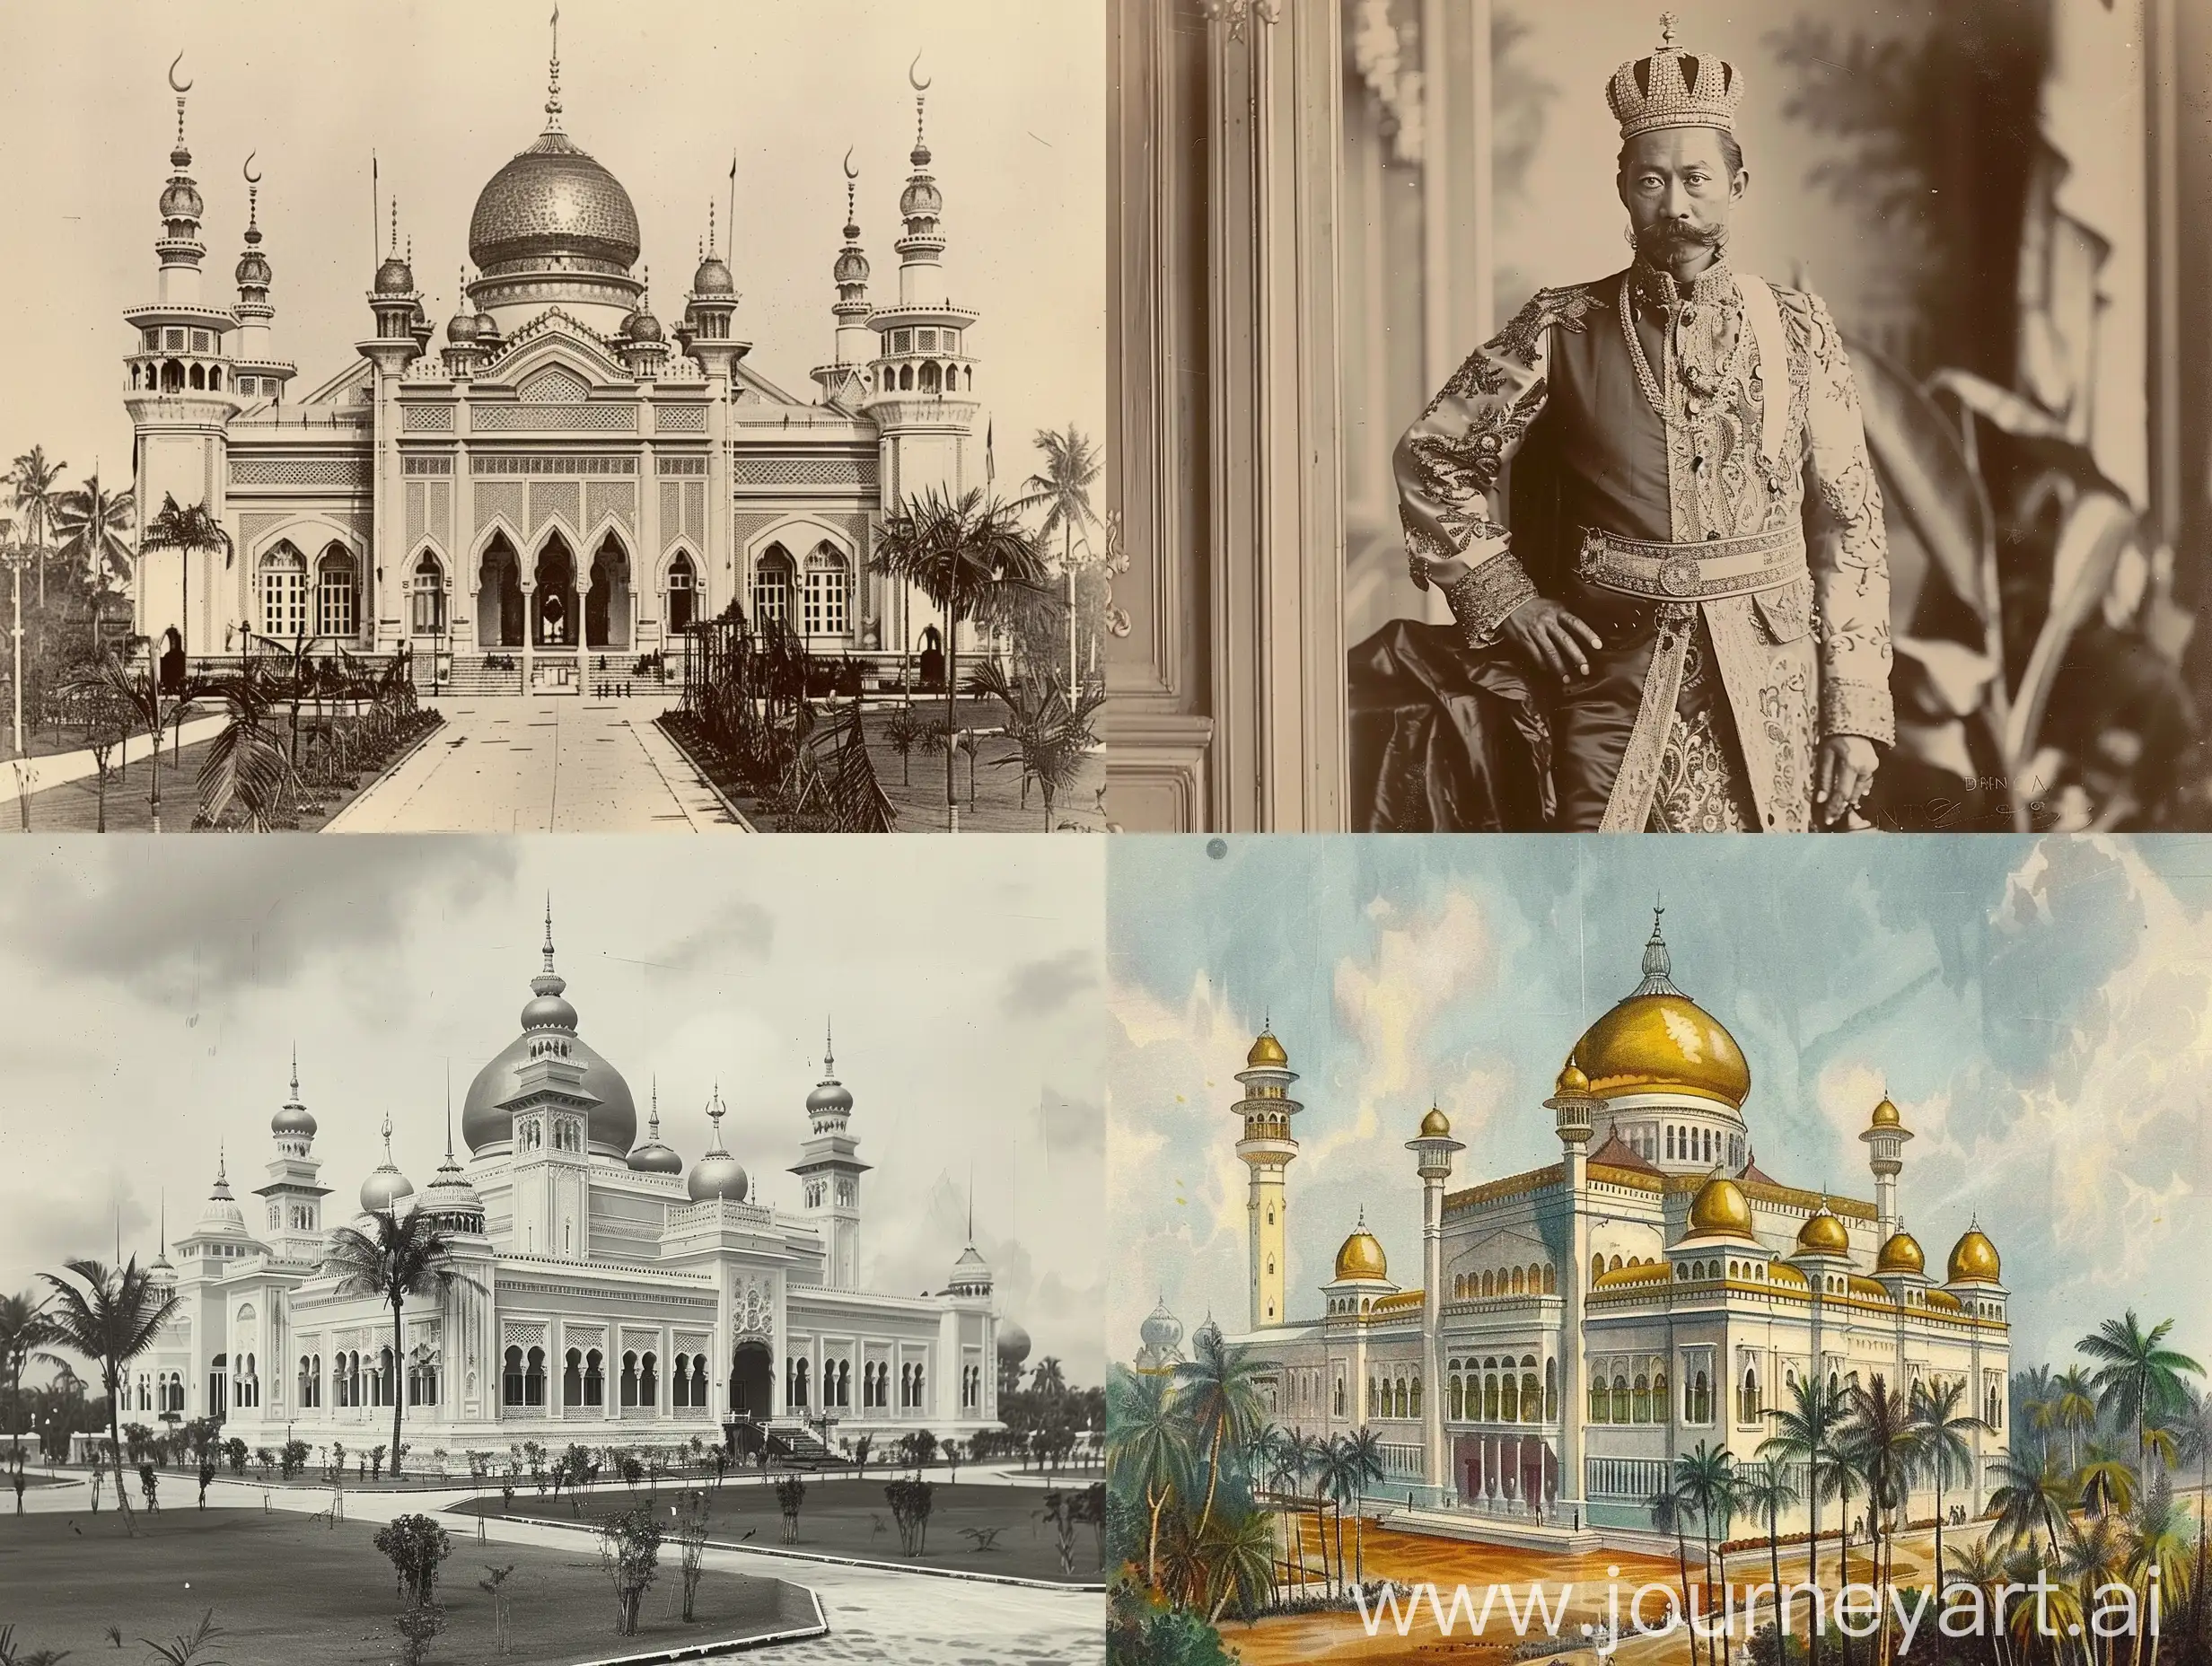 Victorian-Monarchy-in-Brunei-Darussalam